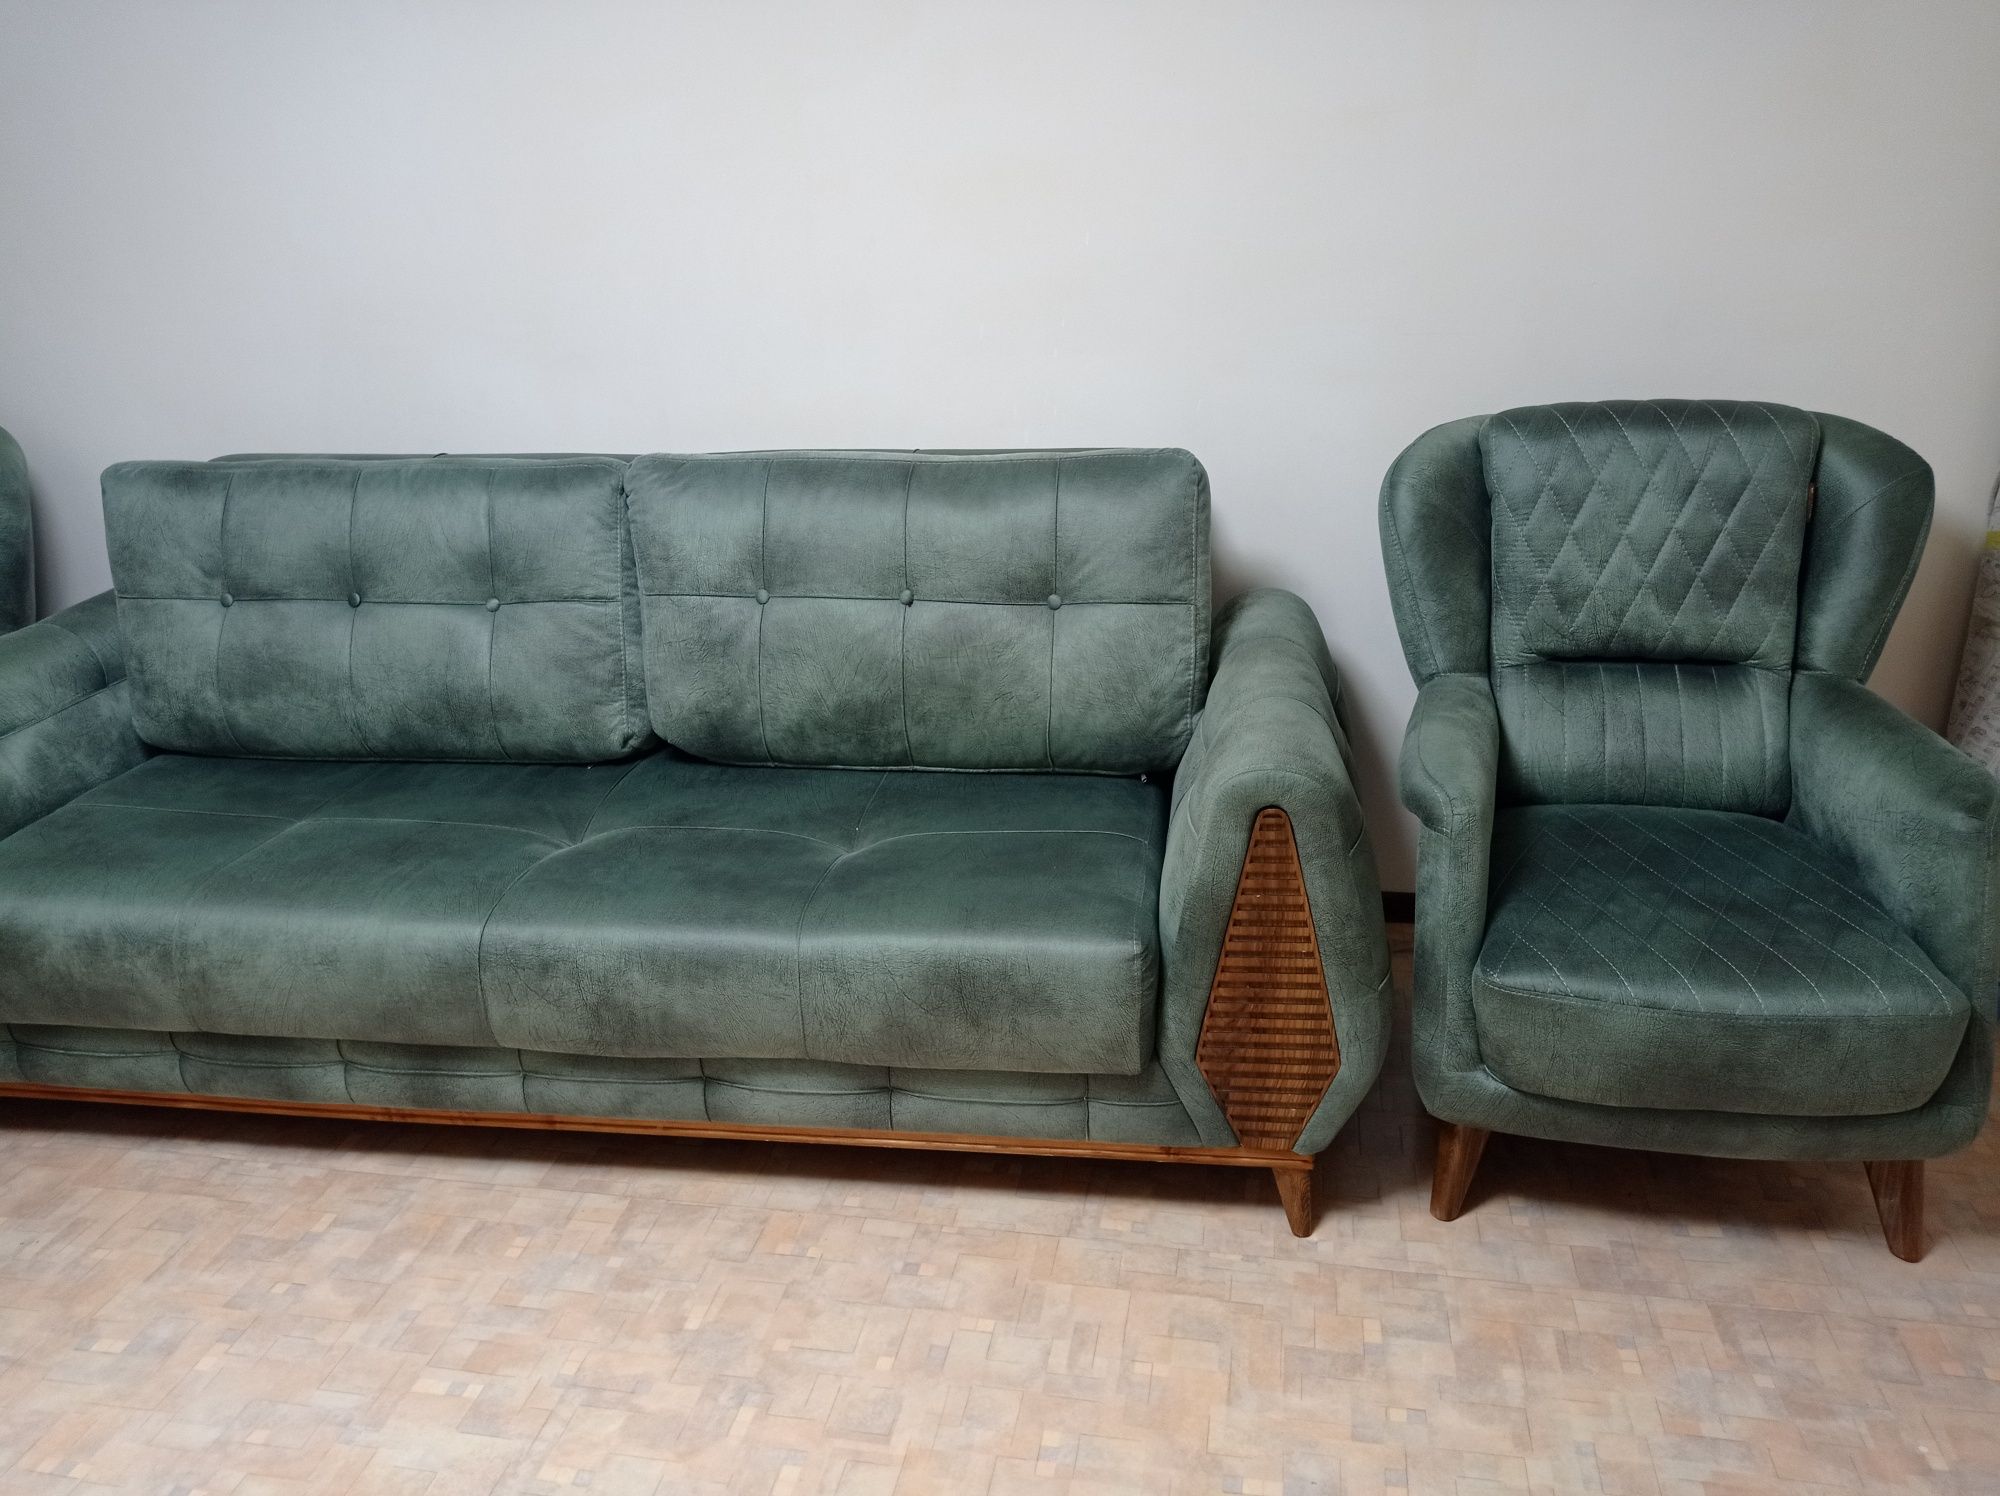 Продам диван  с креслами новый